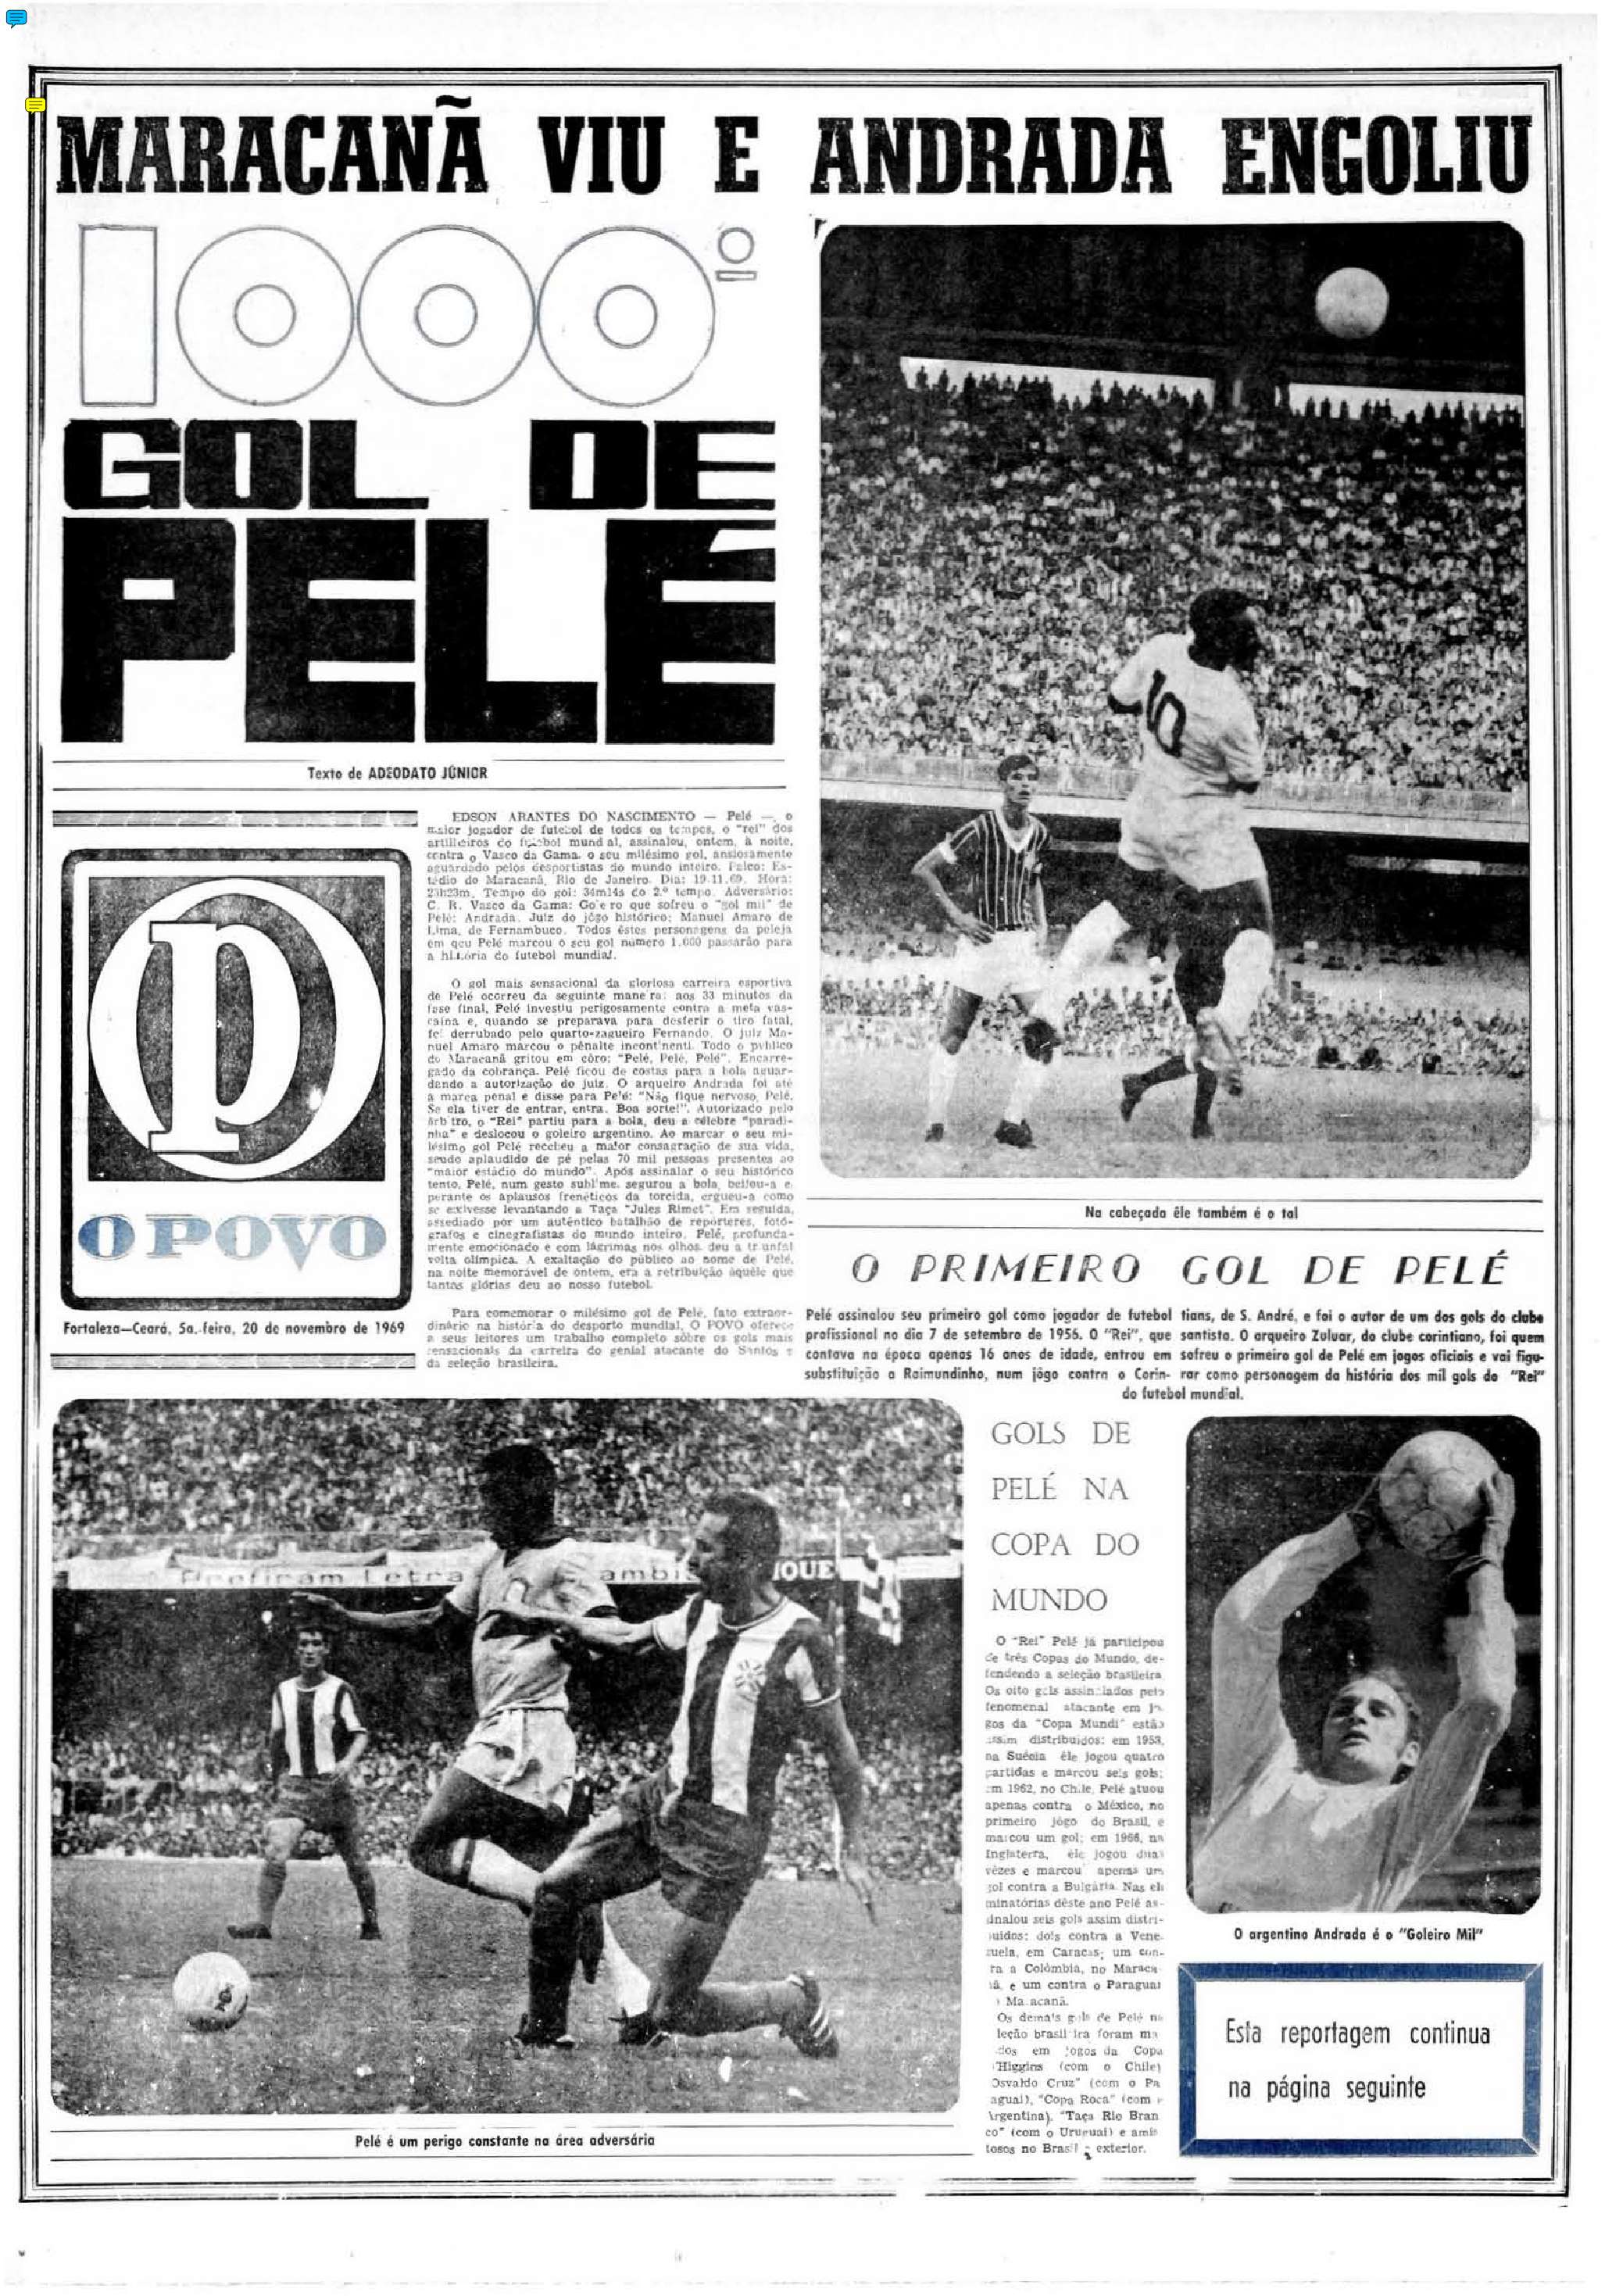 20 de novembro de 1969 - Capa de caderno de Esportes do O POVO sobre o gol mil de Pelé (Foto: Acervo O POVO)